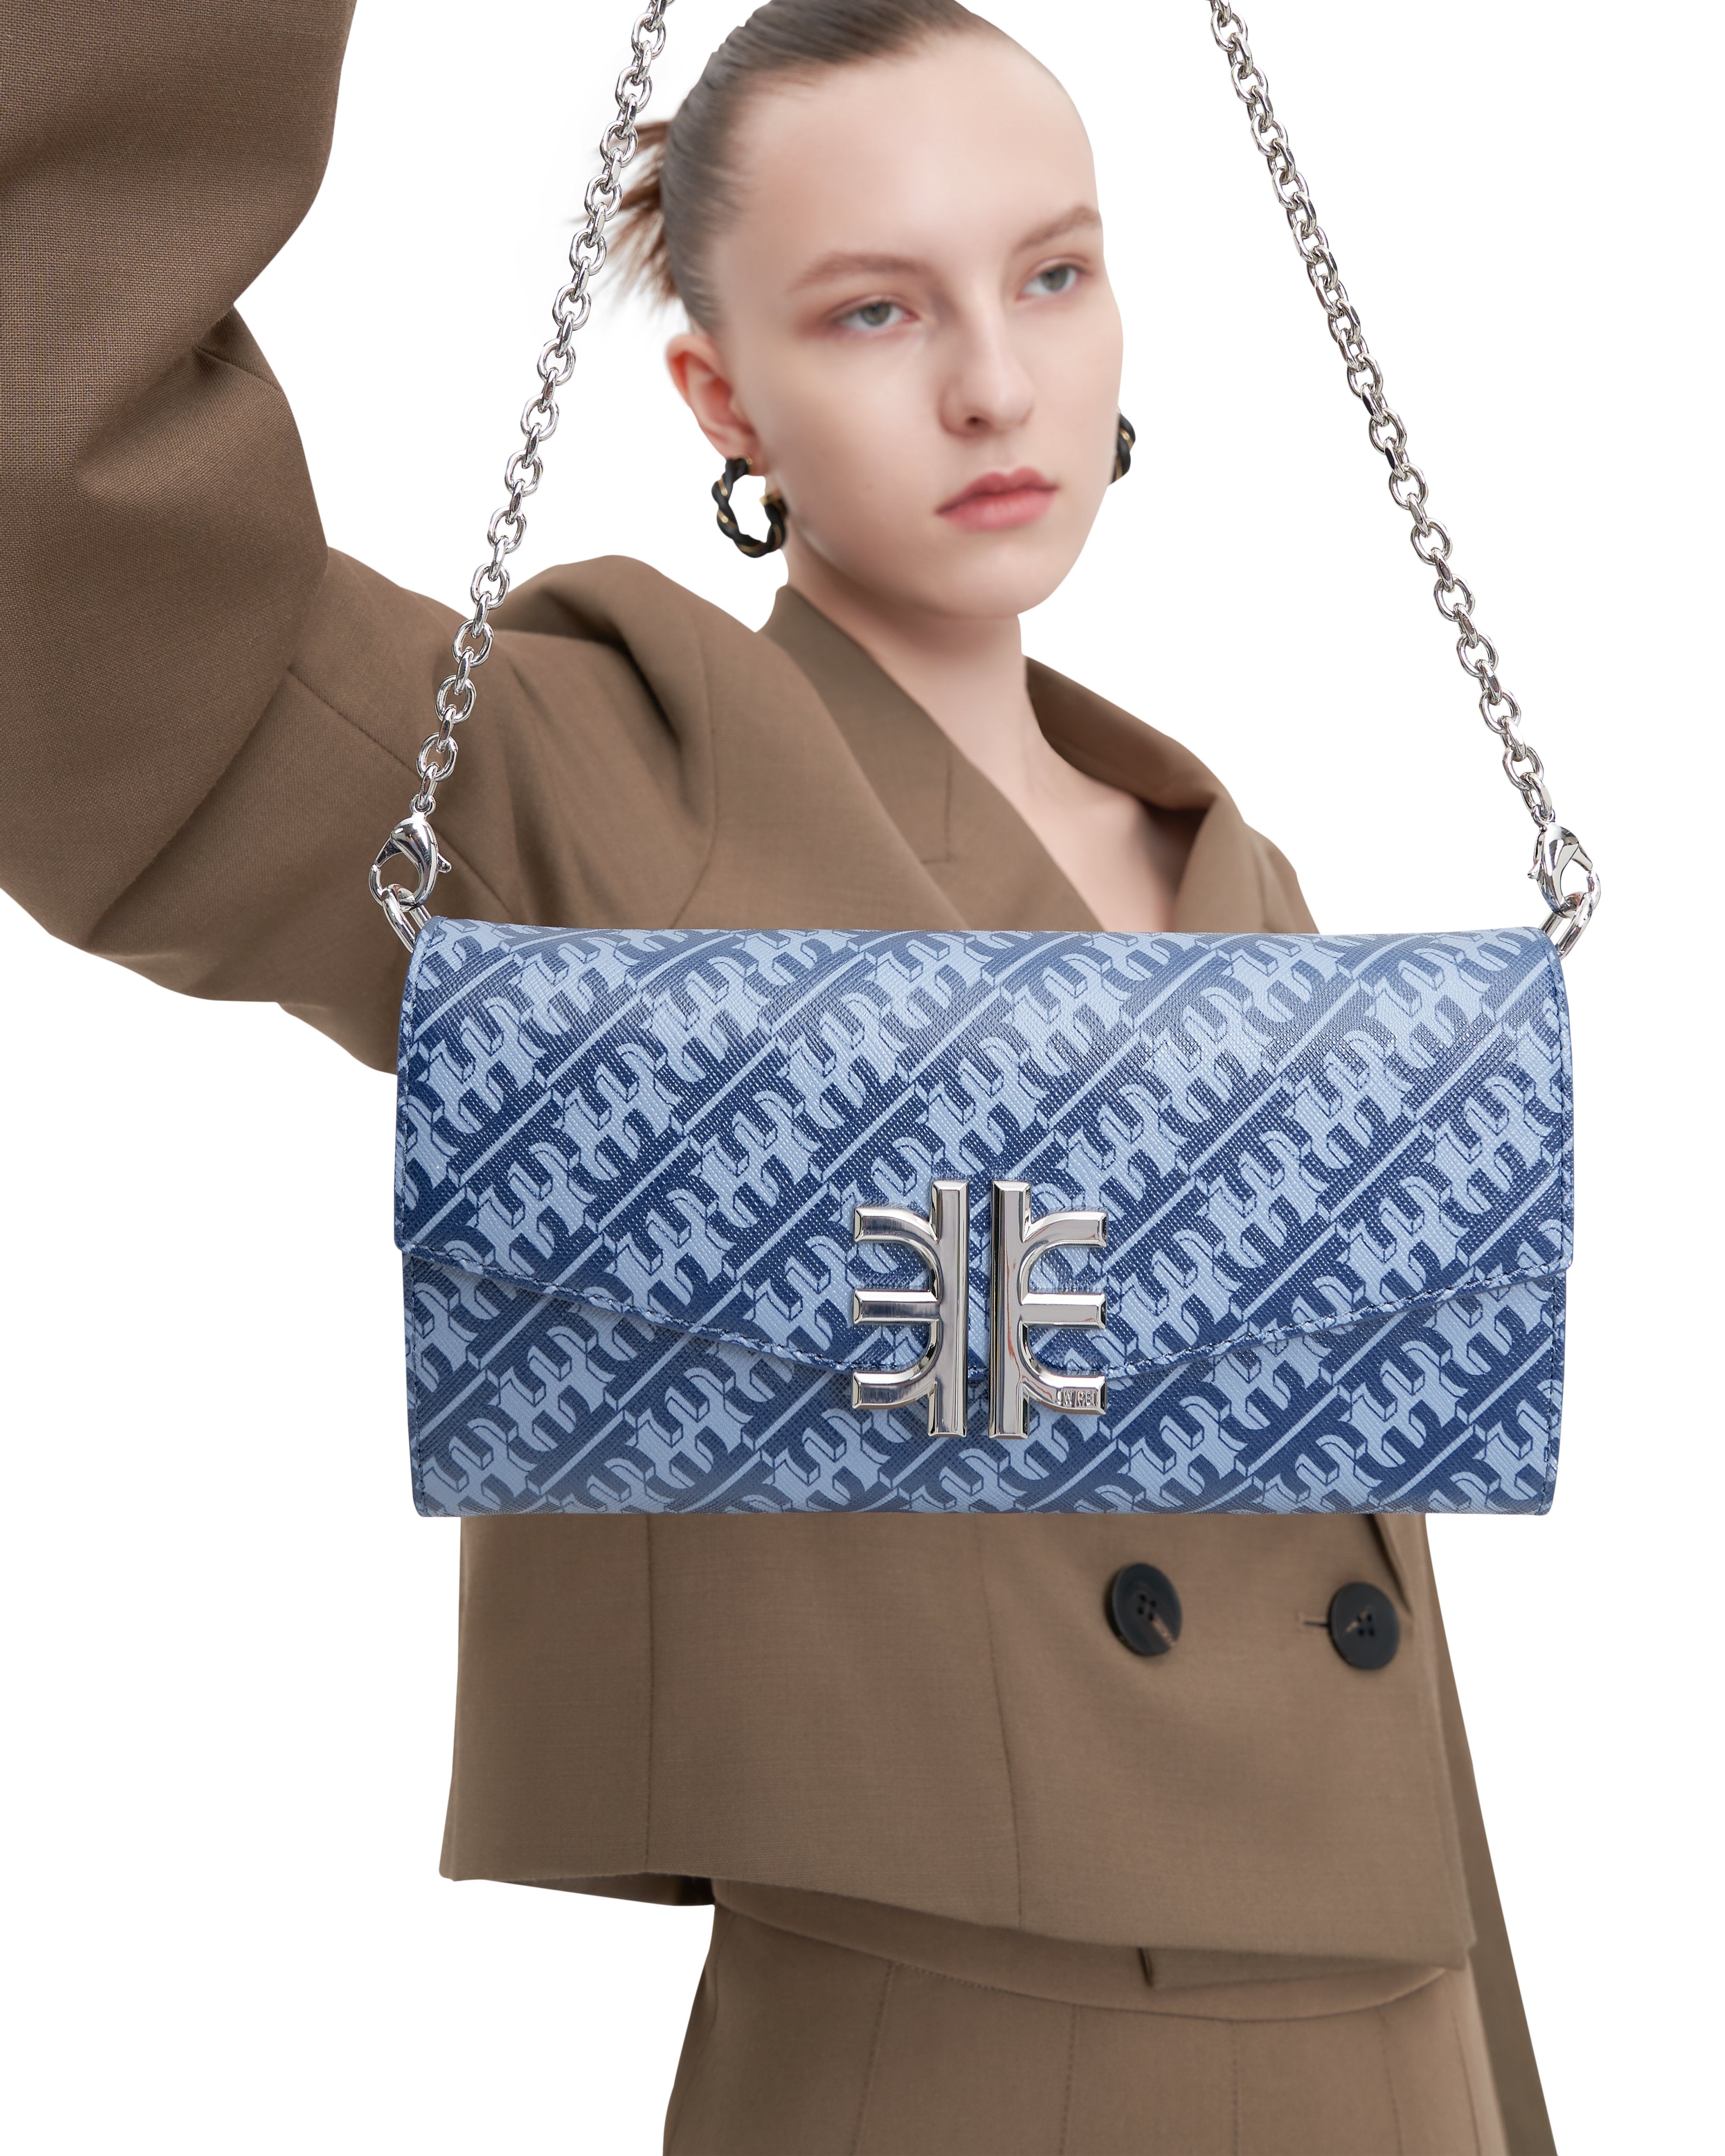 FEI Chain Clutch Bag - Navy